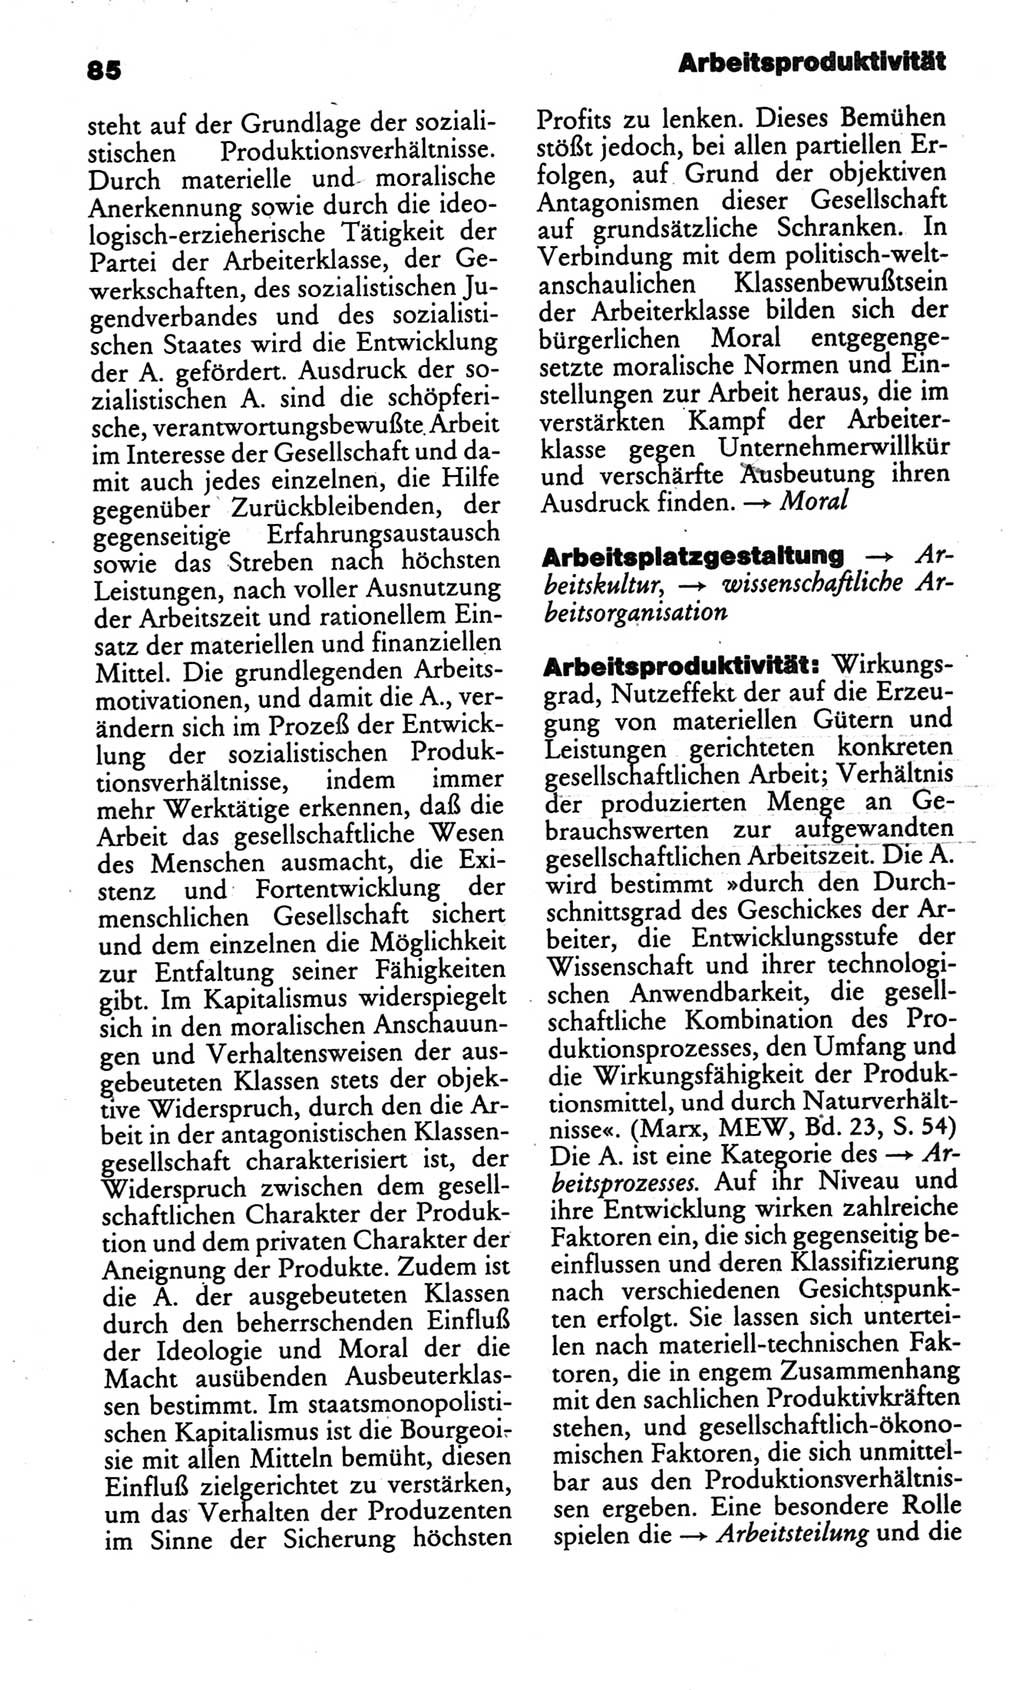 Kleines politisches Wörterbuch [Deutsche Demokratische Republik (DDR)] 1986, Seite 85 (Kl. pol. Wb. DDR 1986, S. 85)